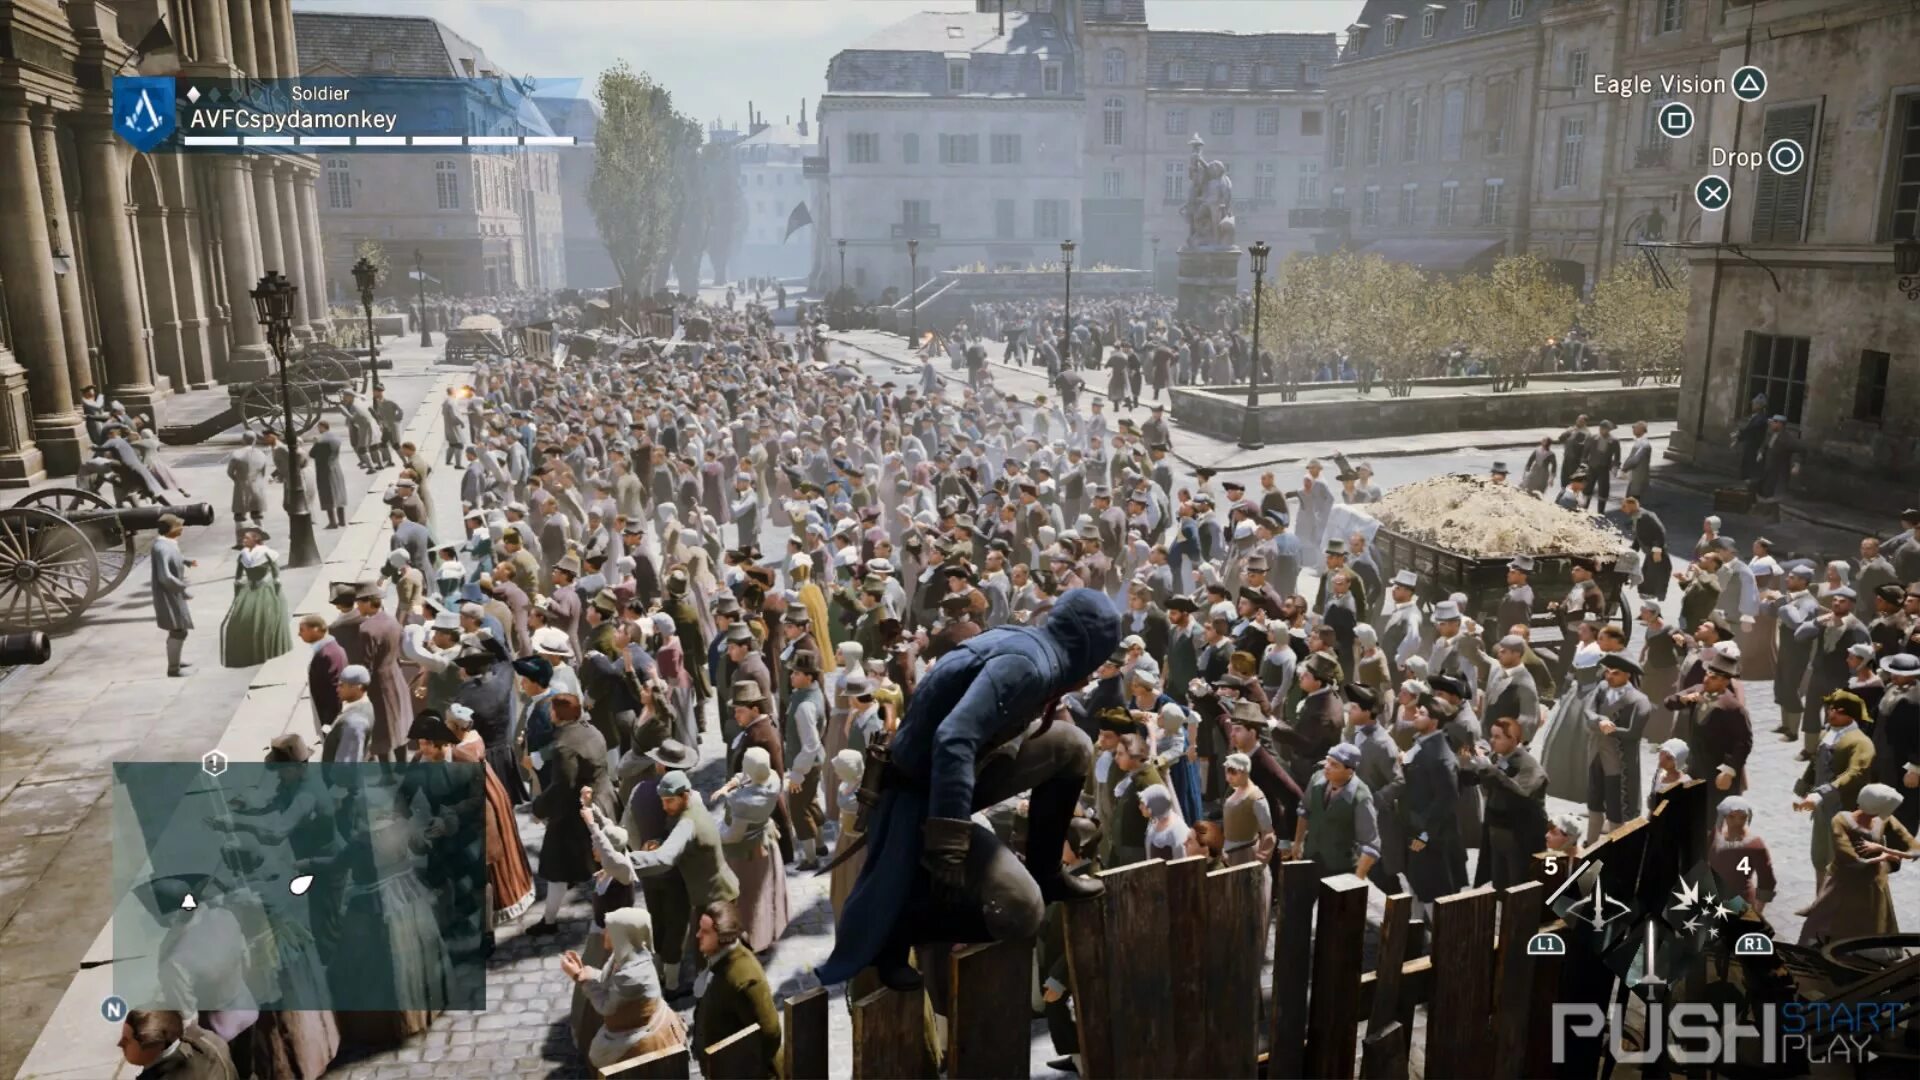 Второй третий последний 2. Массовка в Assassins Creed Unity. Assassin's Creed Unity толпа. Ассасин Юнити толпа. Толпы людей Unity.